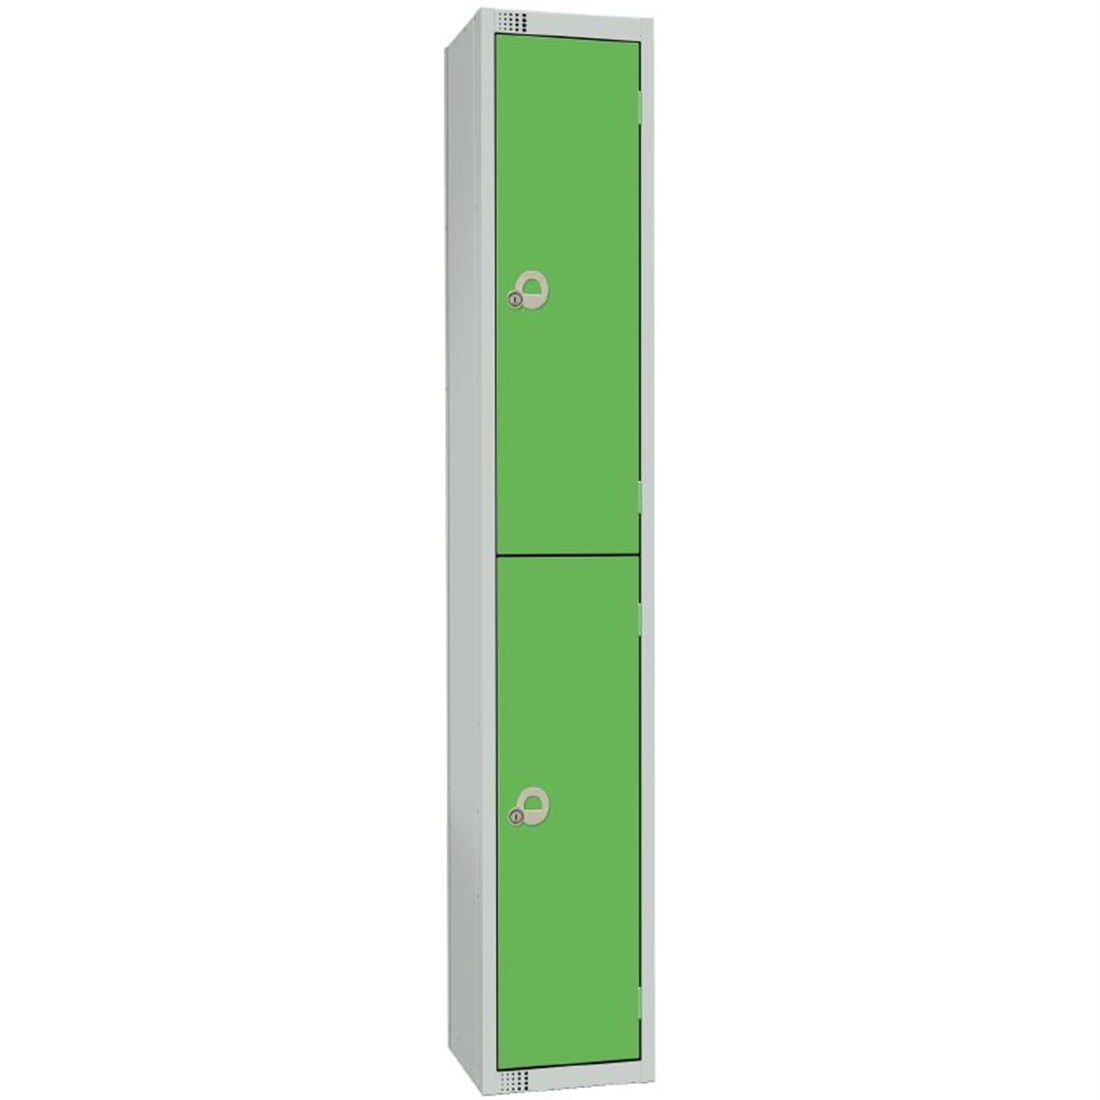 Elite Double Door Manual Combination Locker Locker Green with Sloping Top